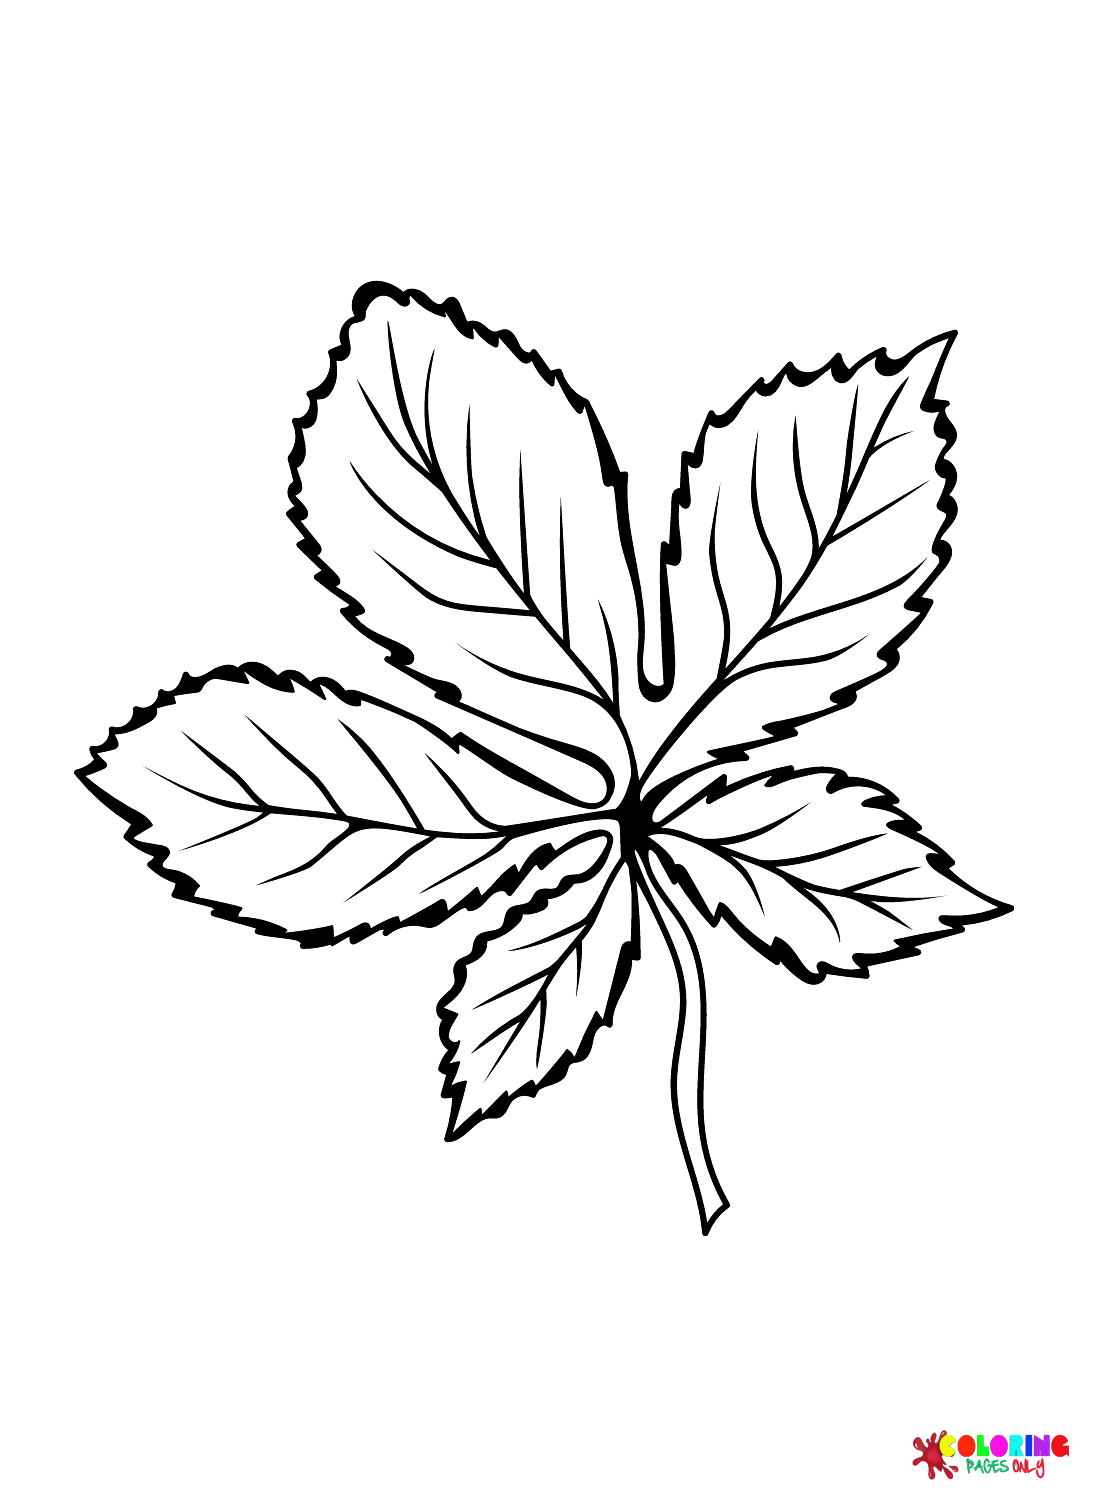 Foglia di castagno europeo dalle foglie